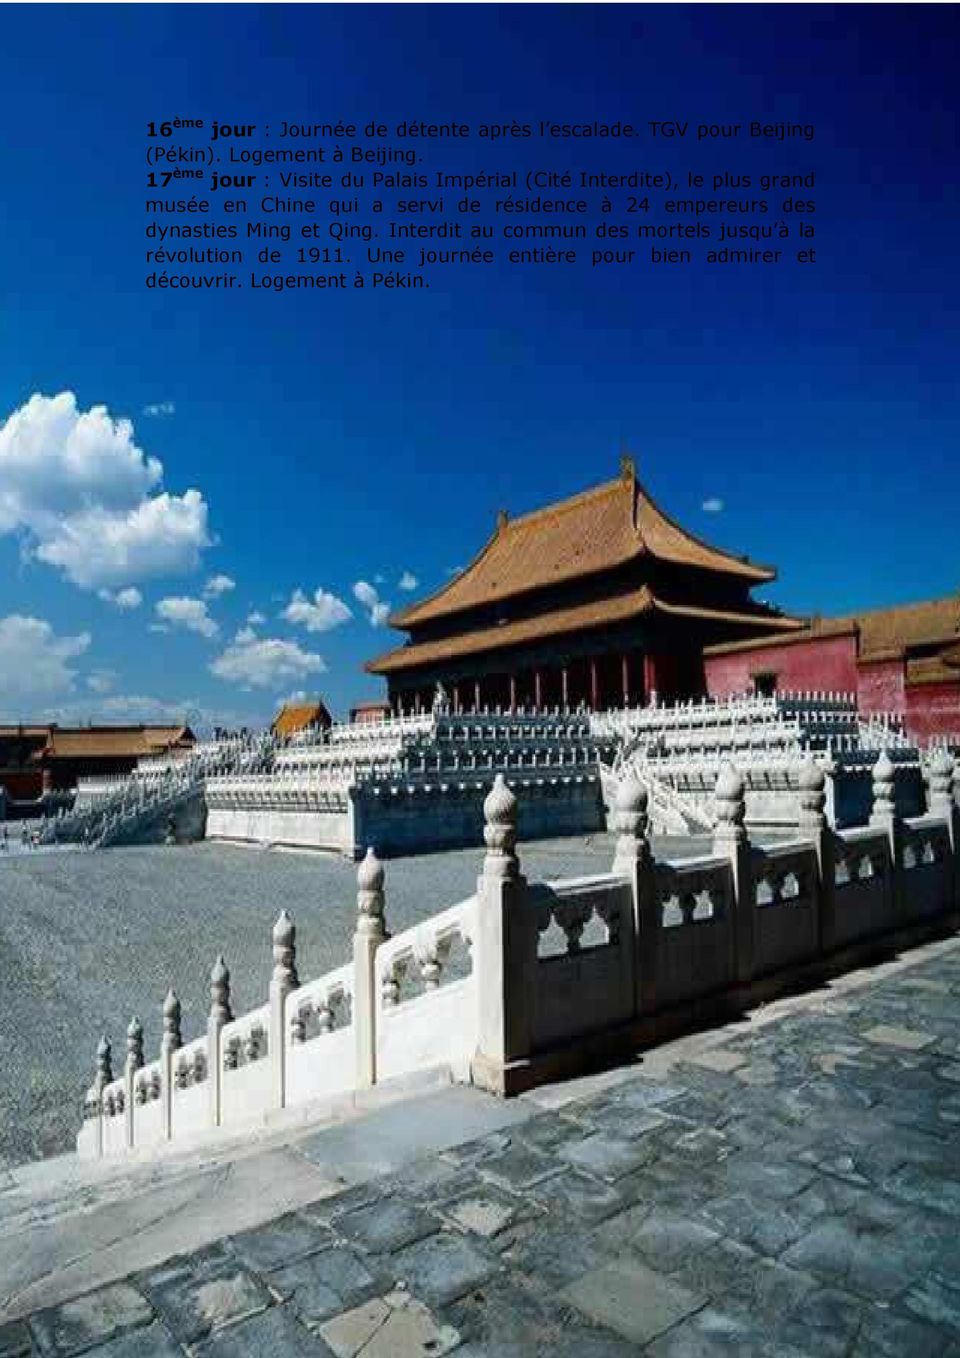 servi de résidence à 24 empereurs des dynasties Ming et Qing.